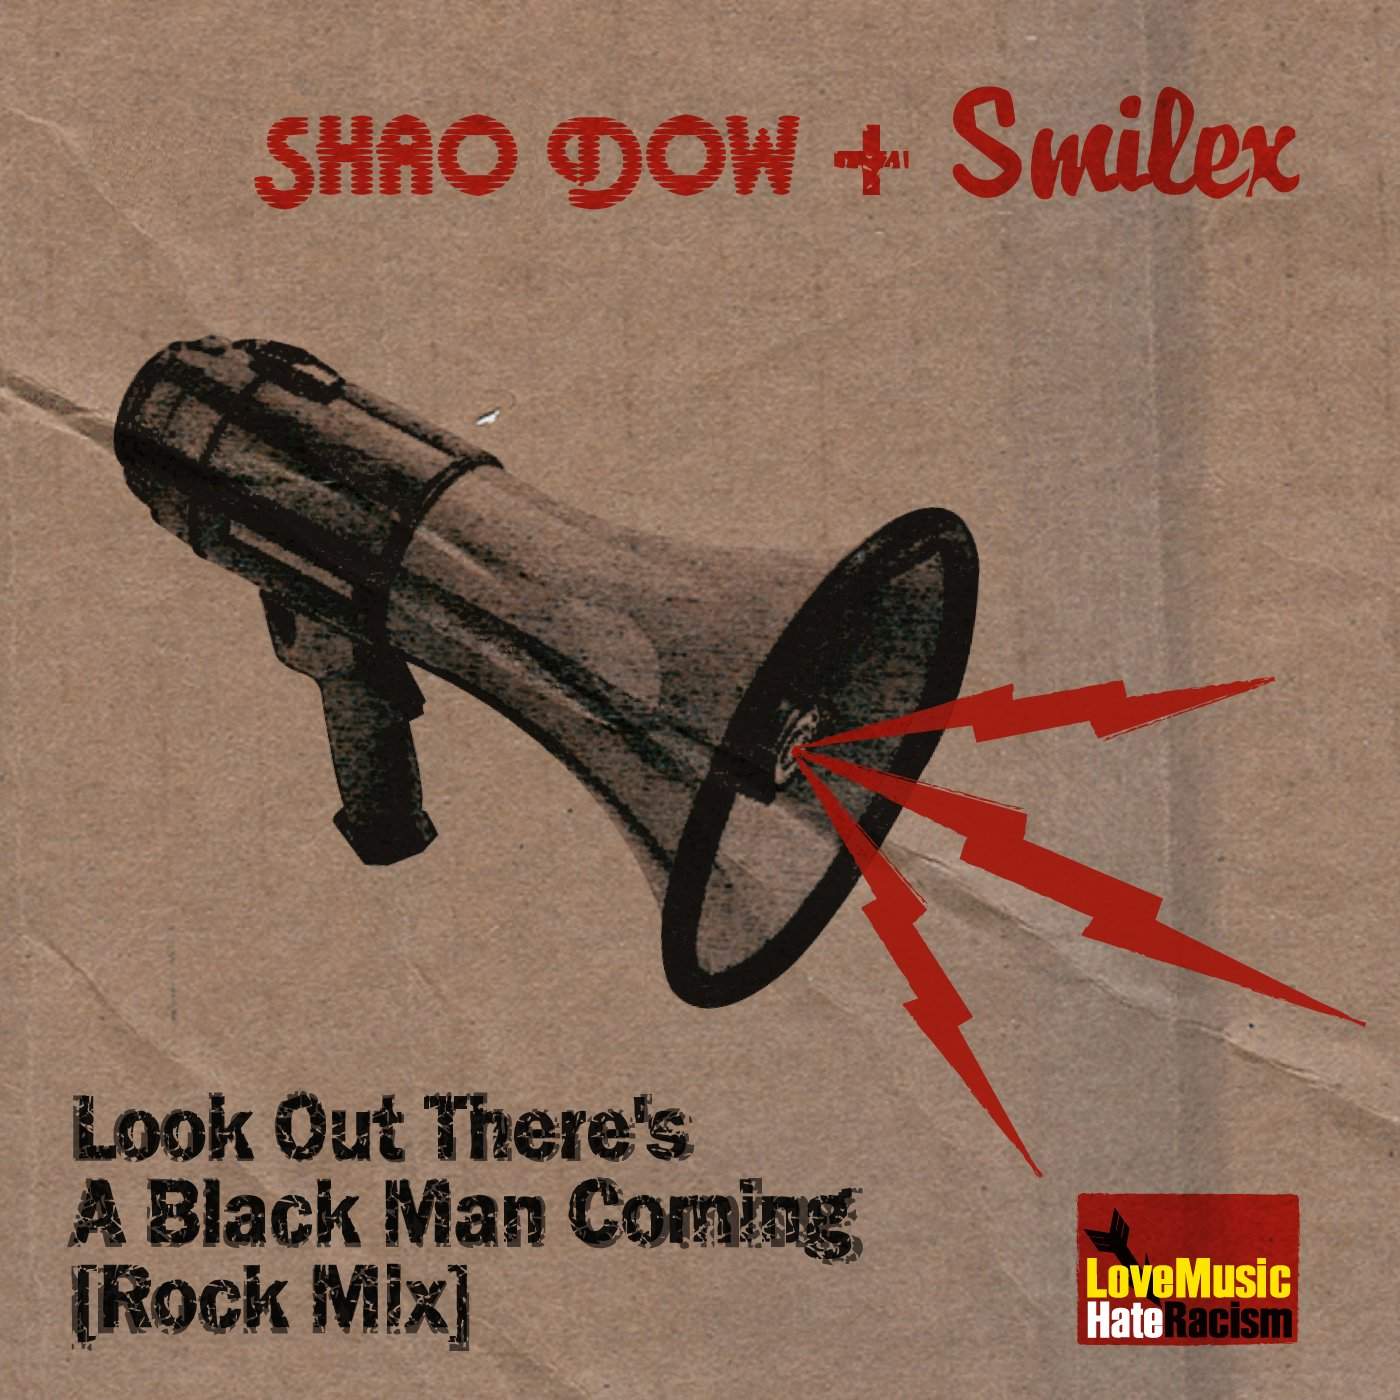 Look Out Single-Shao Dow - The DiY Gang Store-DiY Gang,Look Out,Look Out The Single,Look Out There's A Black Man Coming,Shadow,ShaoDow,Shaowdow,shoadow